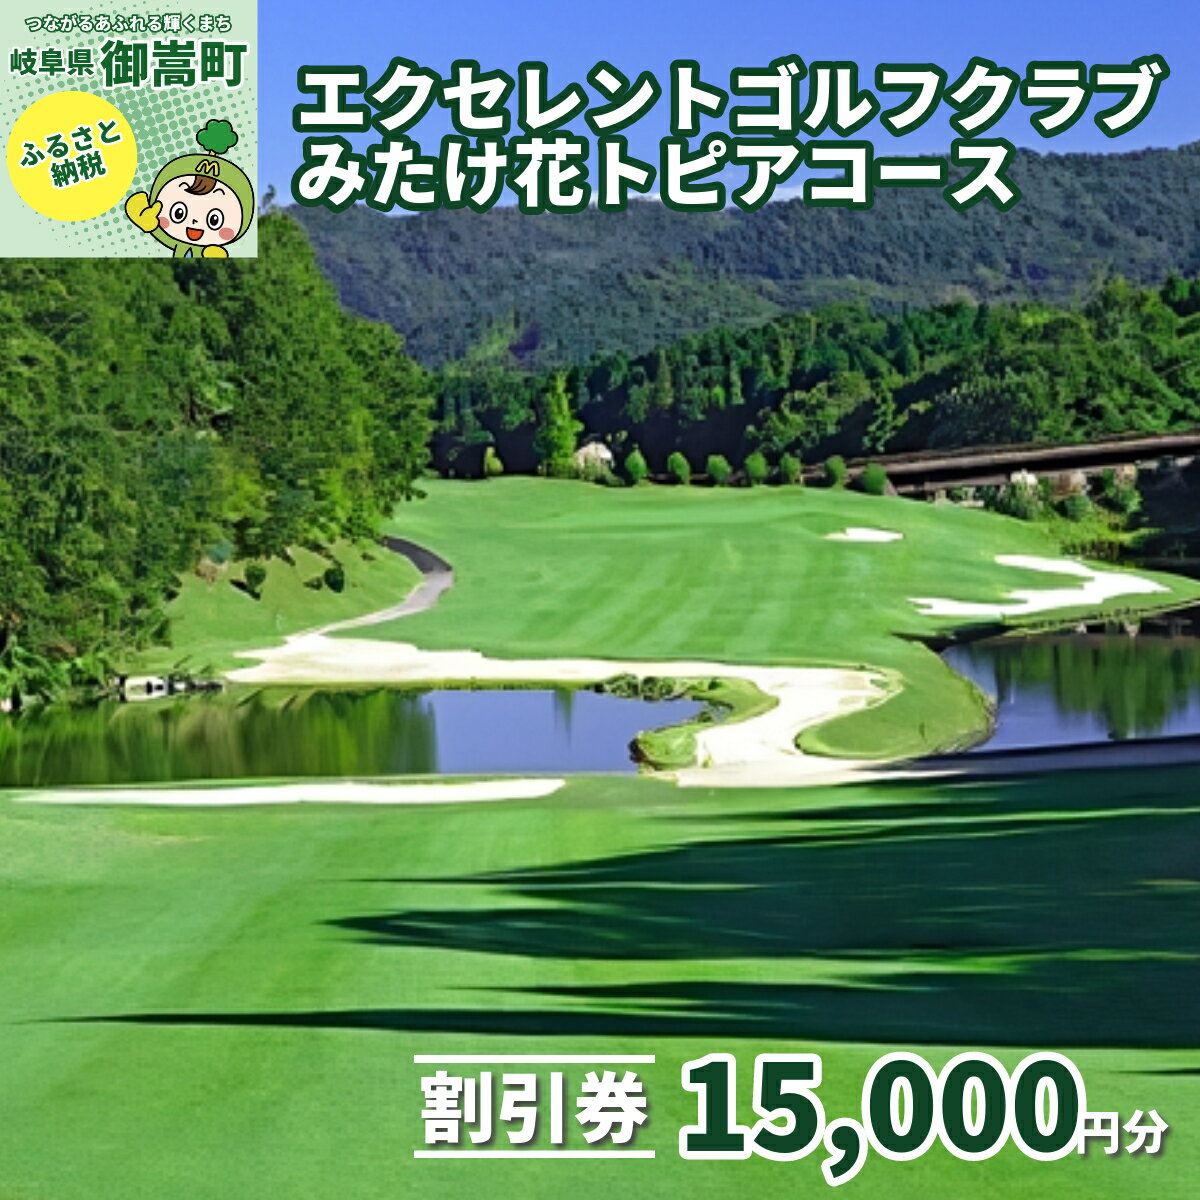 エクセレントゴルフクラブみたけ花トピアコースゴルフプレー割引券15,000円分(寄付金区分5万円)